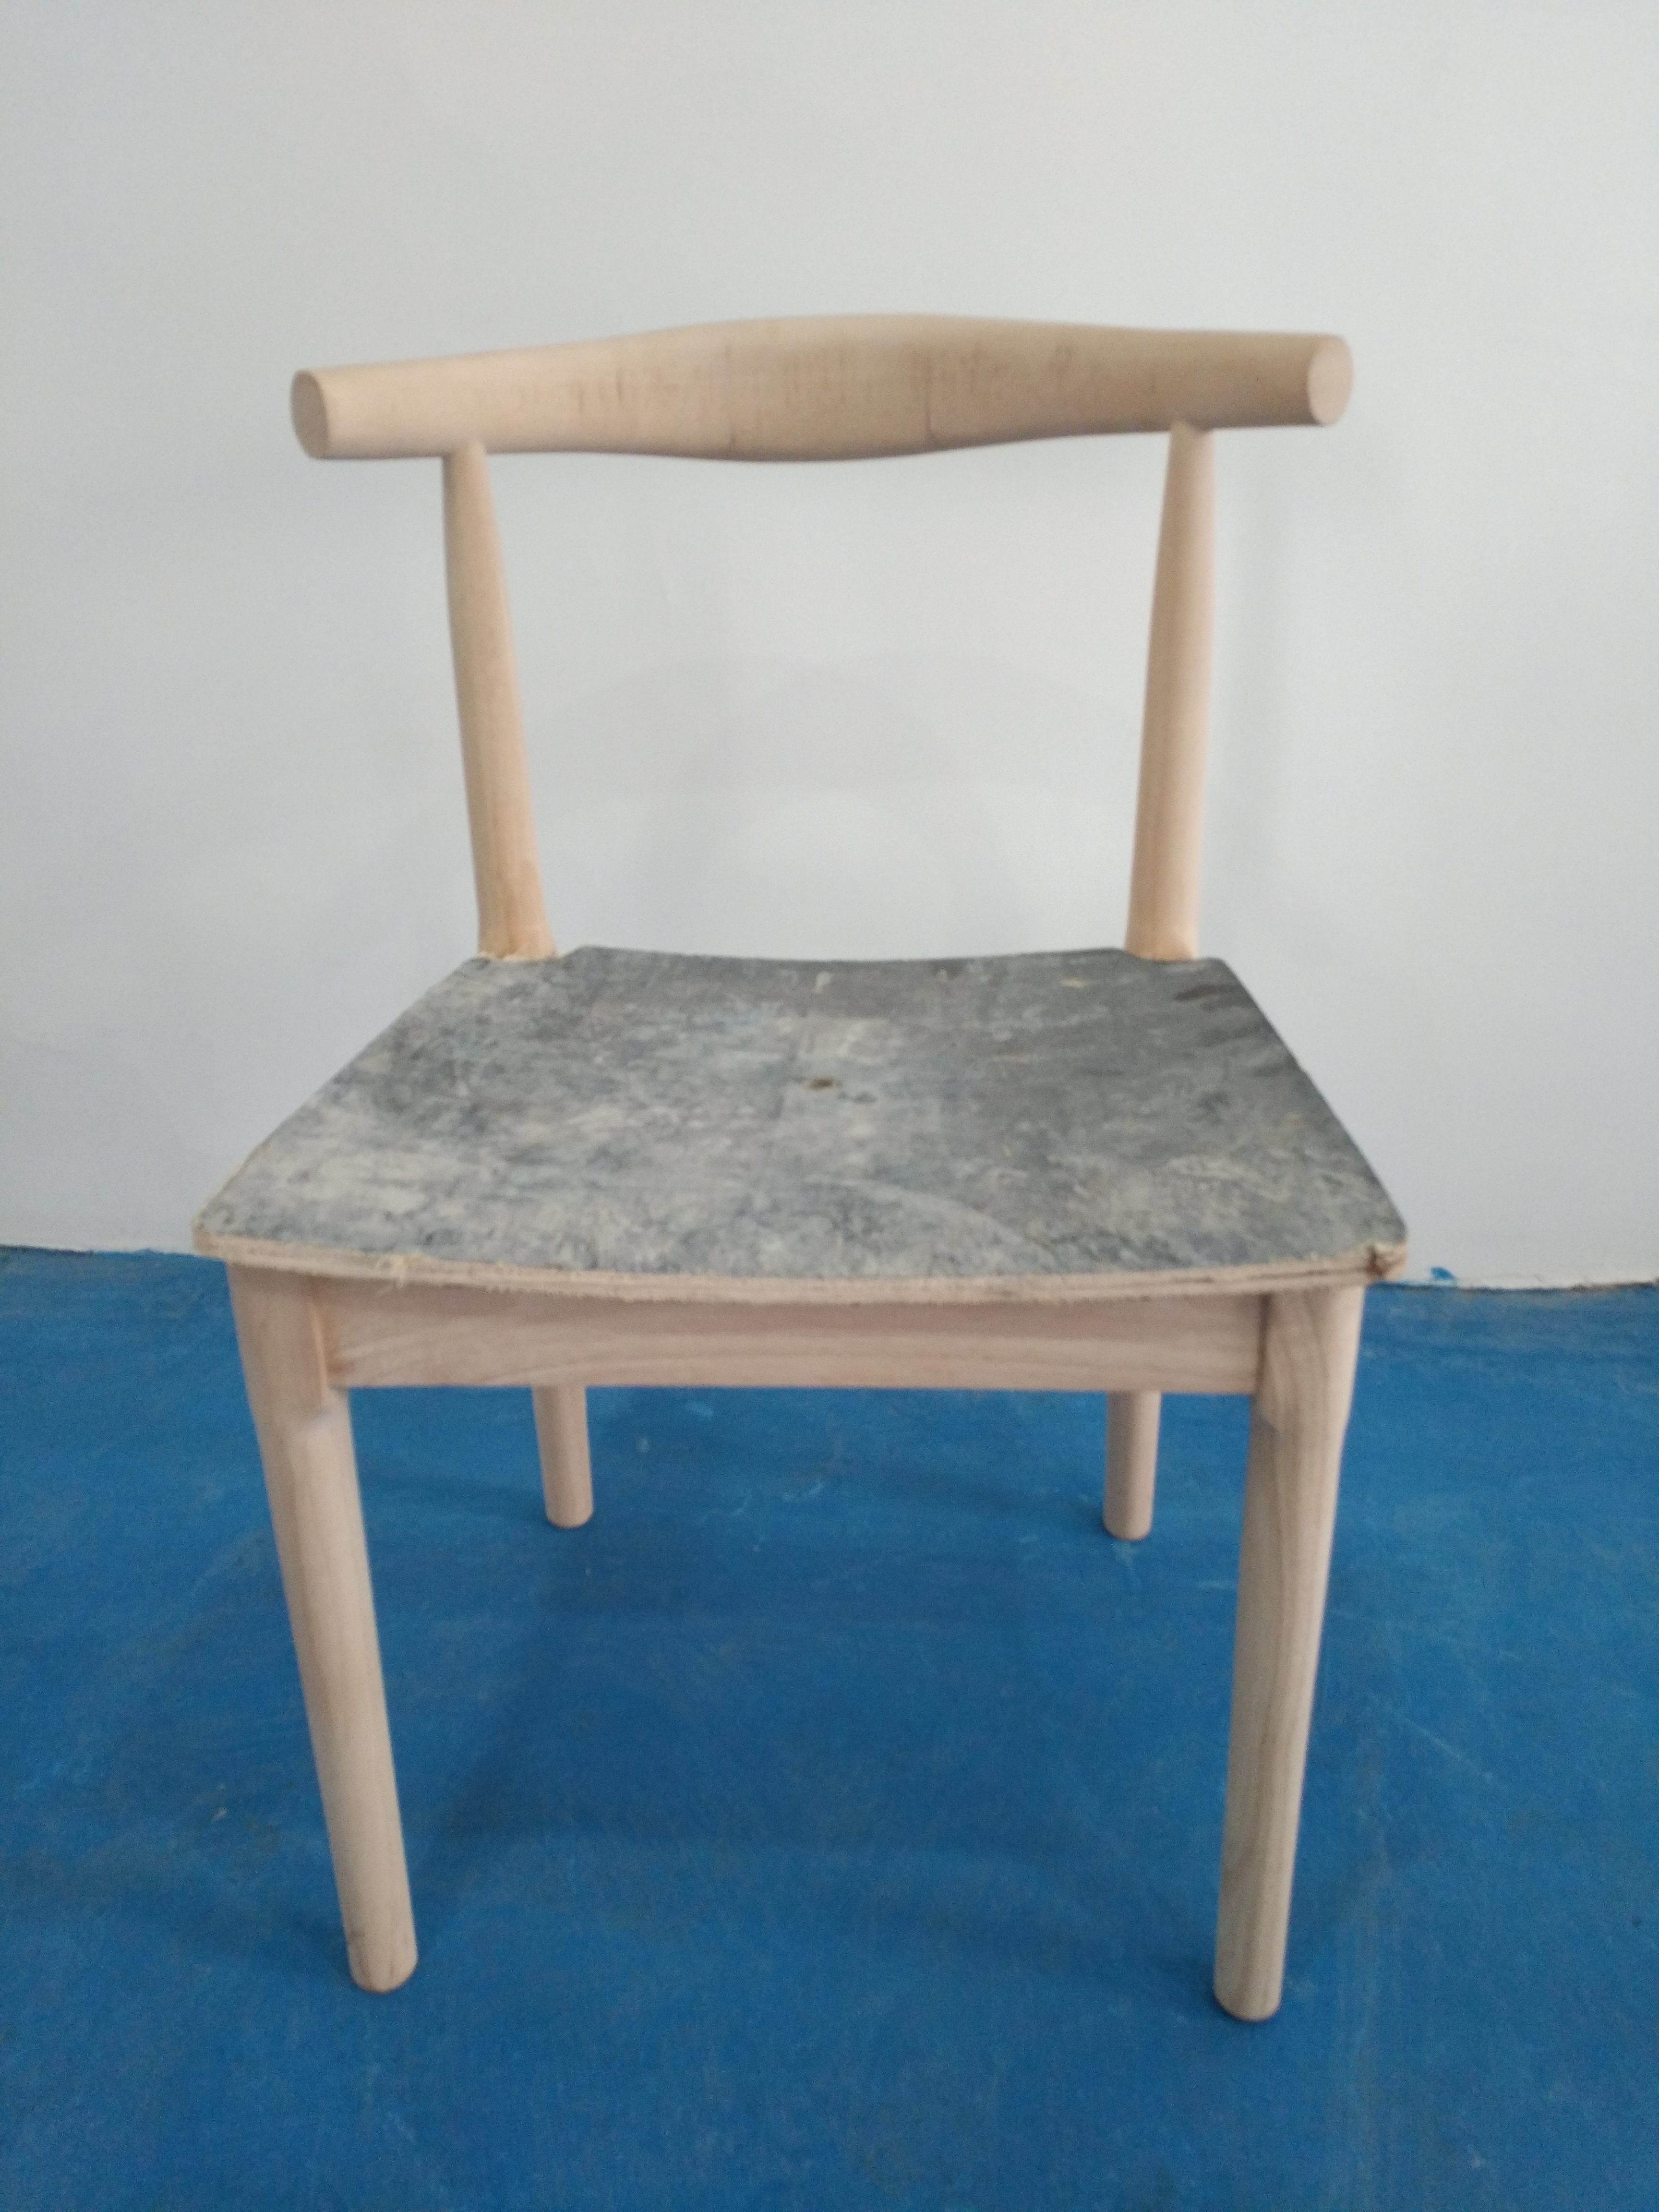 纯实木橡胶木餐椅书桌椅家用北欧简约会议办公凳子餐厅靠背牛角椅